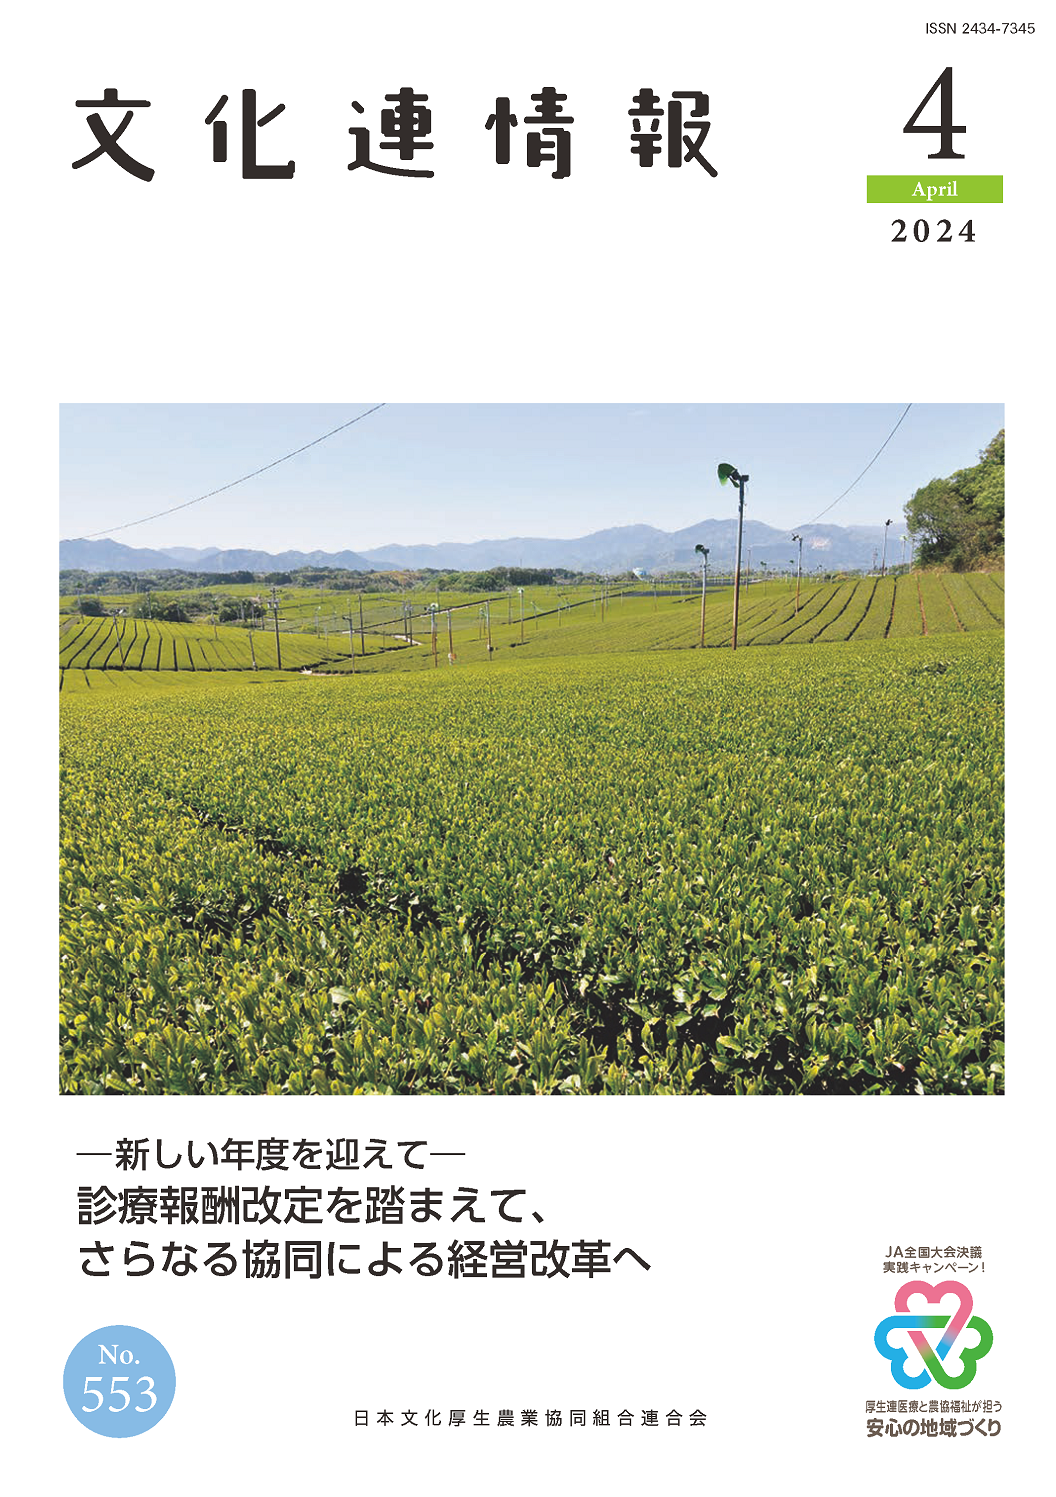 文化連情報 | 日本文化厚生農業協同組合連合会